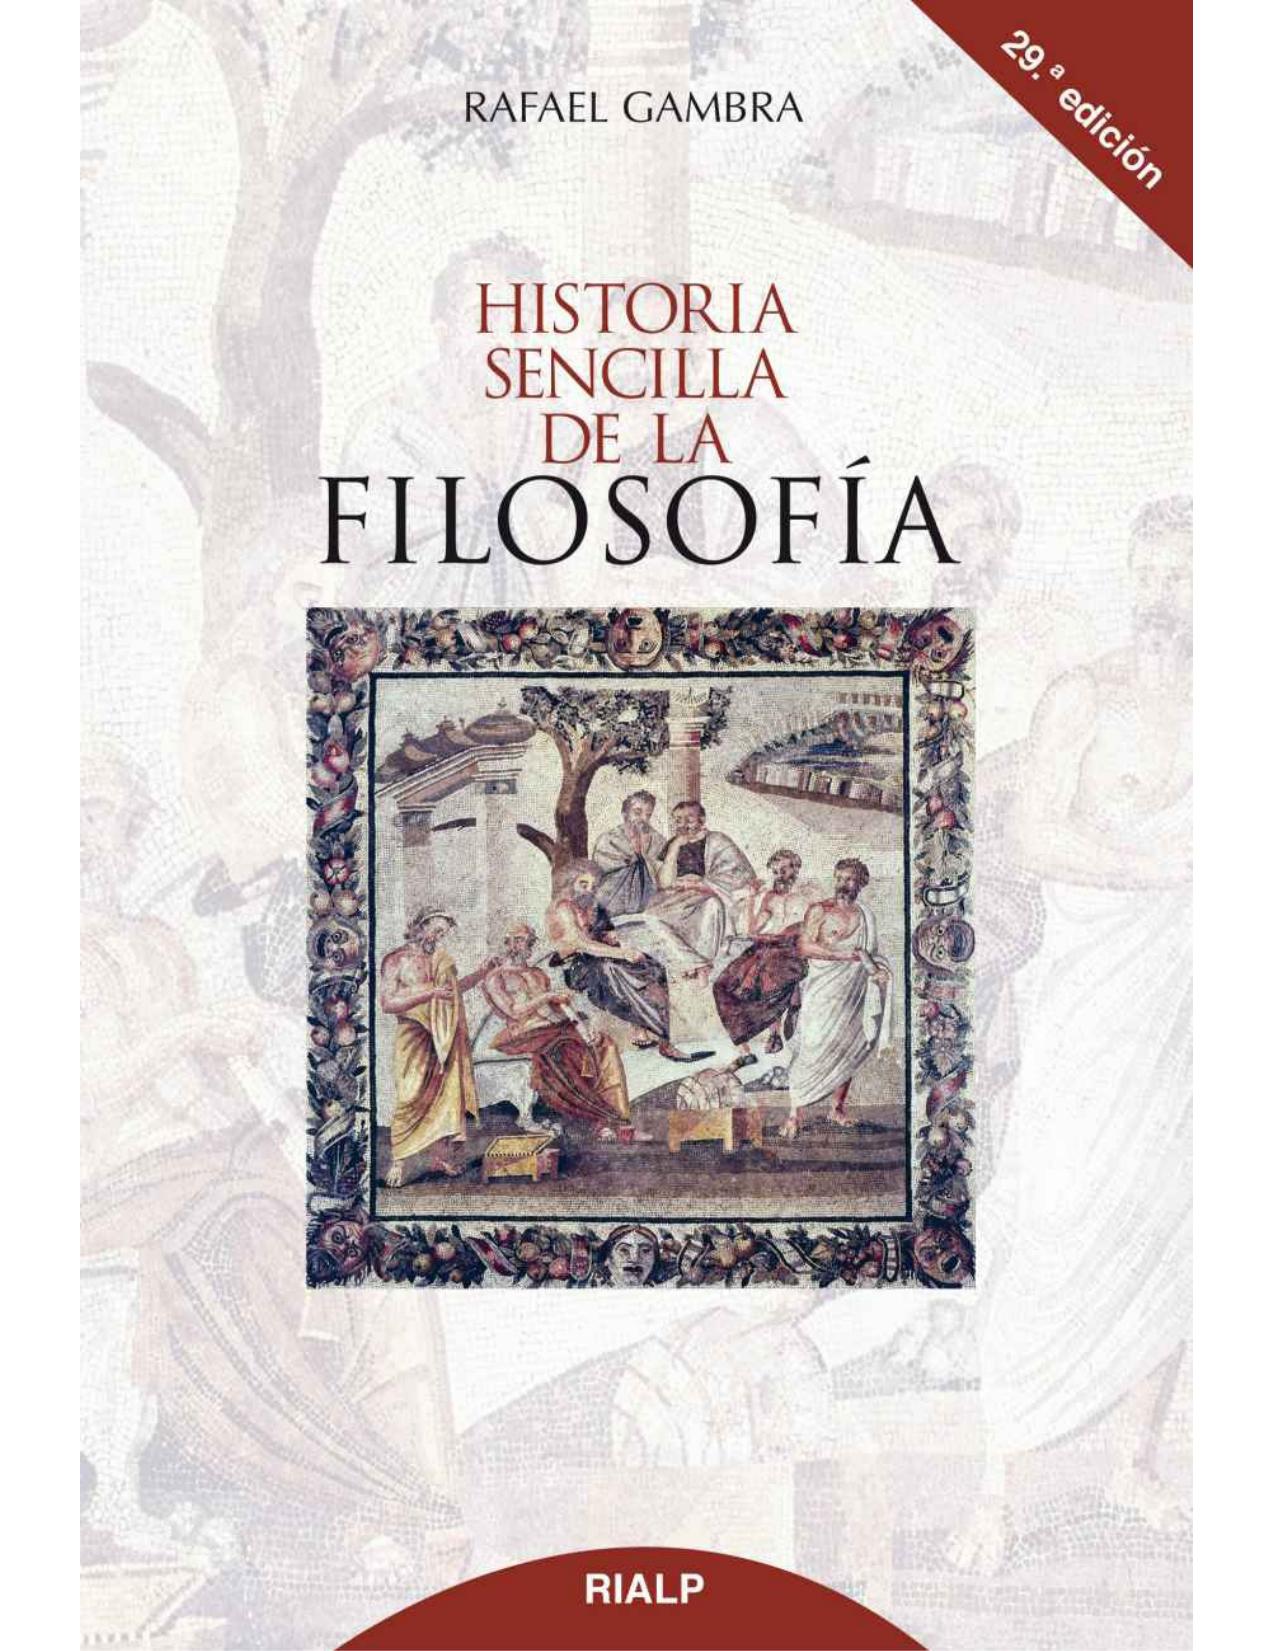 Historia sencilla de la filosofía (Spanish Edition)